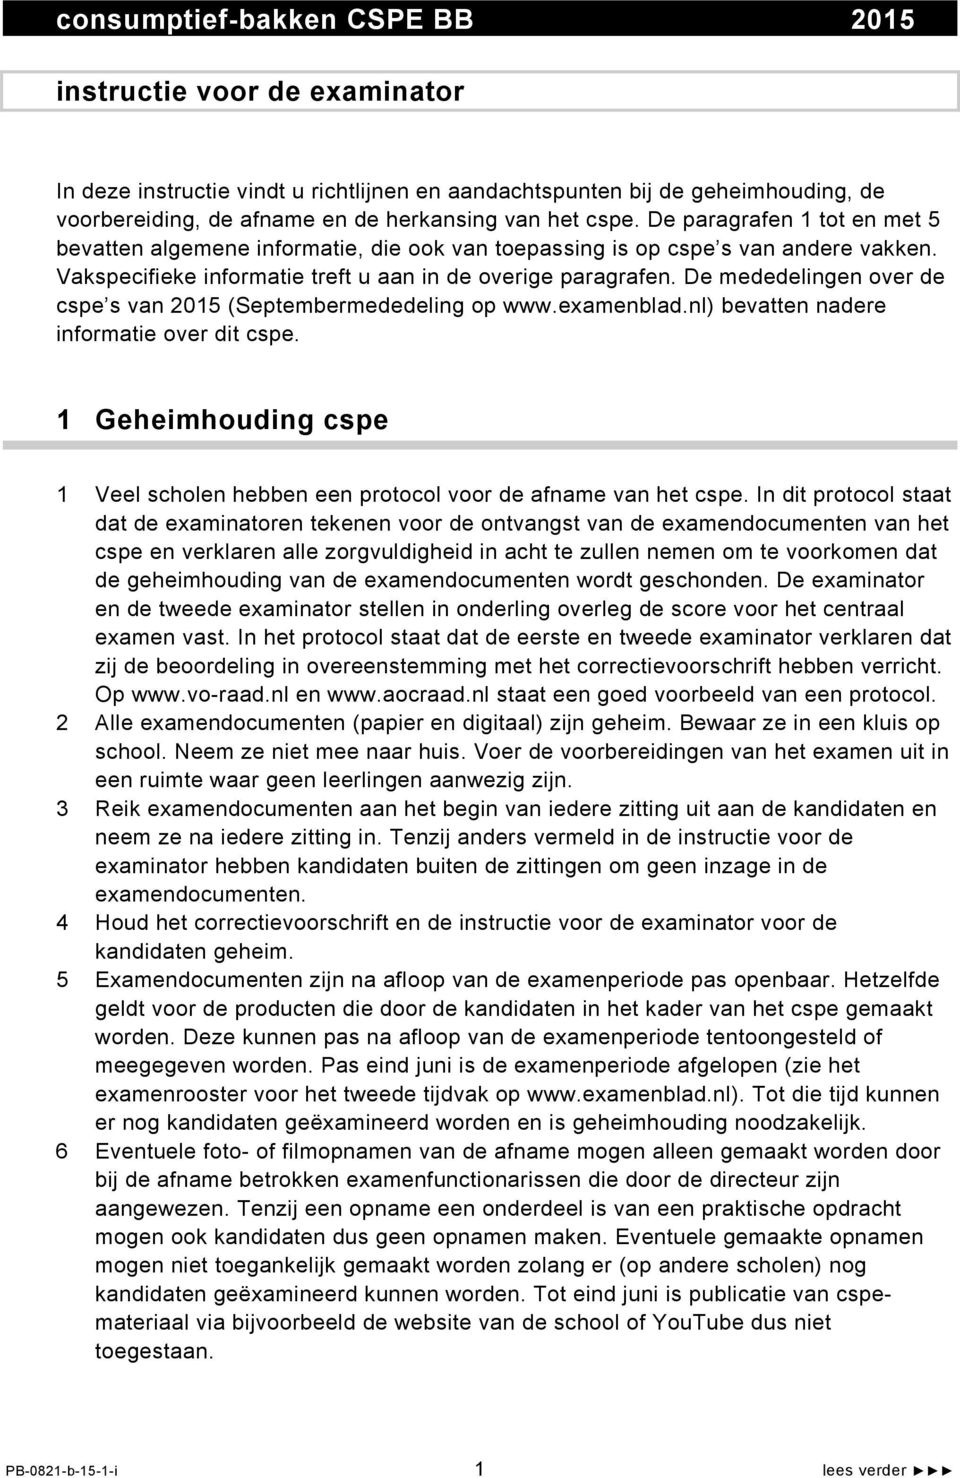 De mededelingen over de cspe s van 2015 (Septembermededeling op www.examenblad.nl) bevatten nadere informatie over dit cspe.